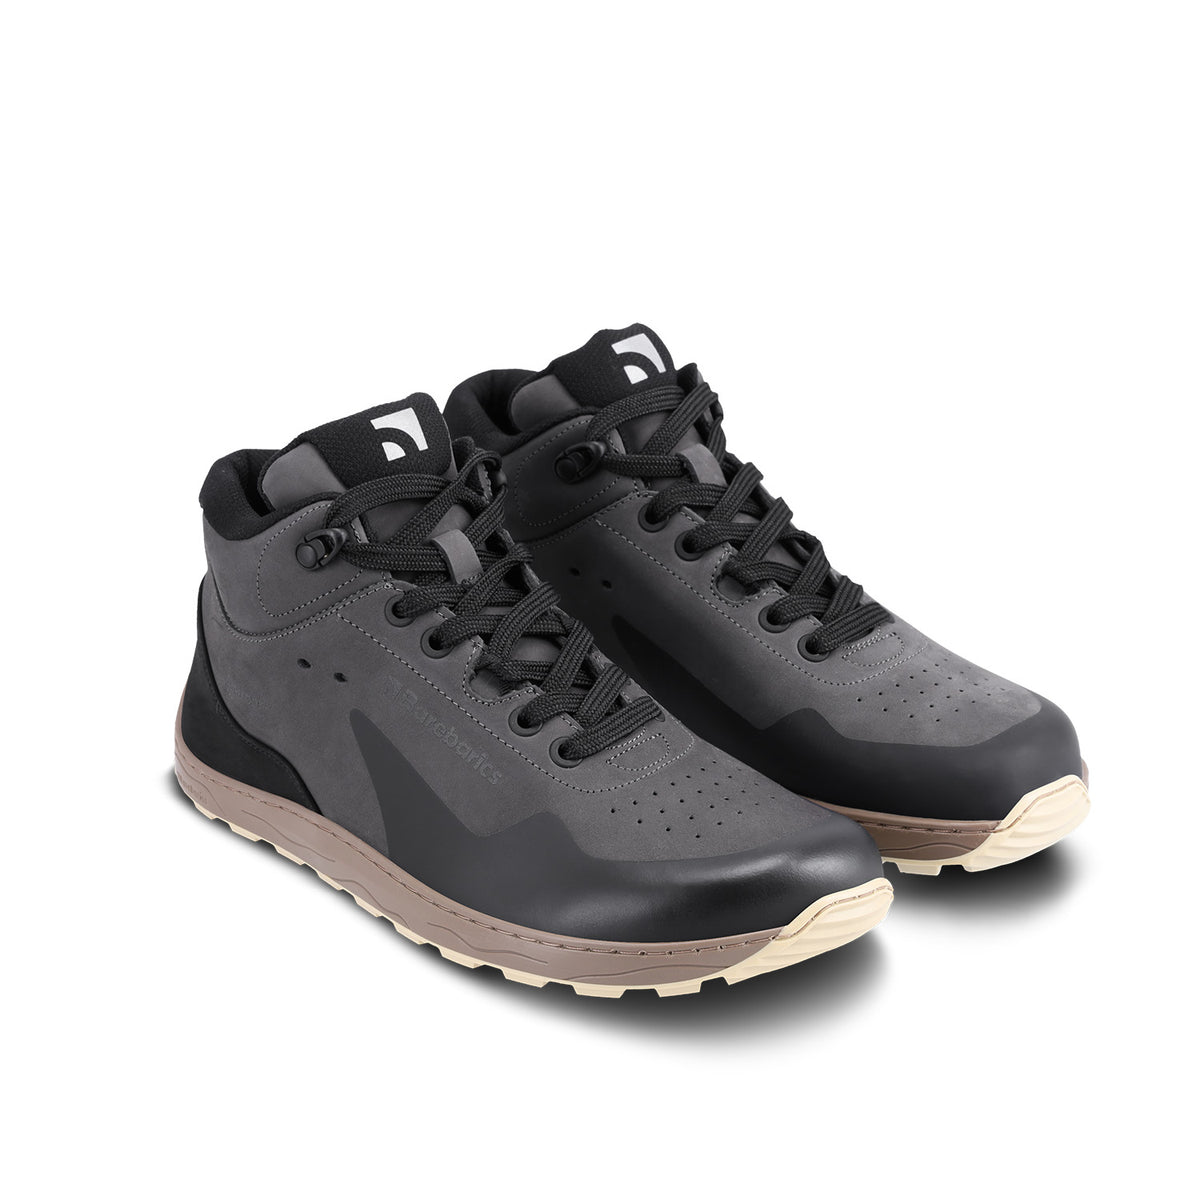 Barefoot Sneakers Barebarics Trekker - Dark Grey 3  - OzBarefoot